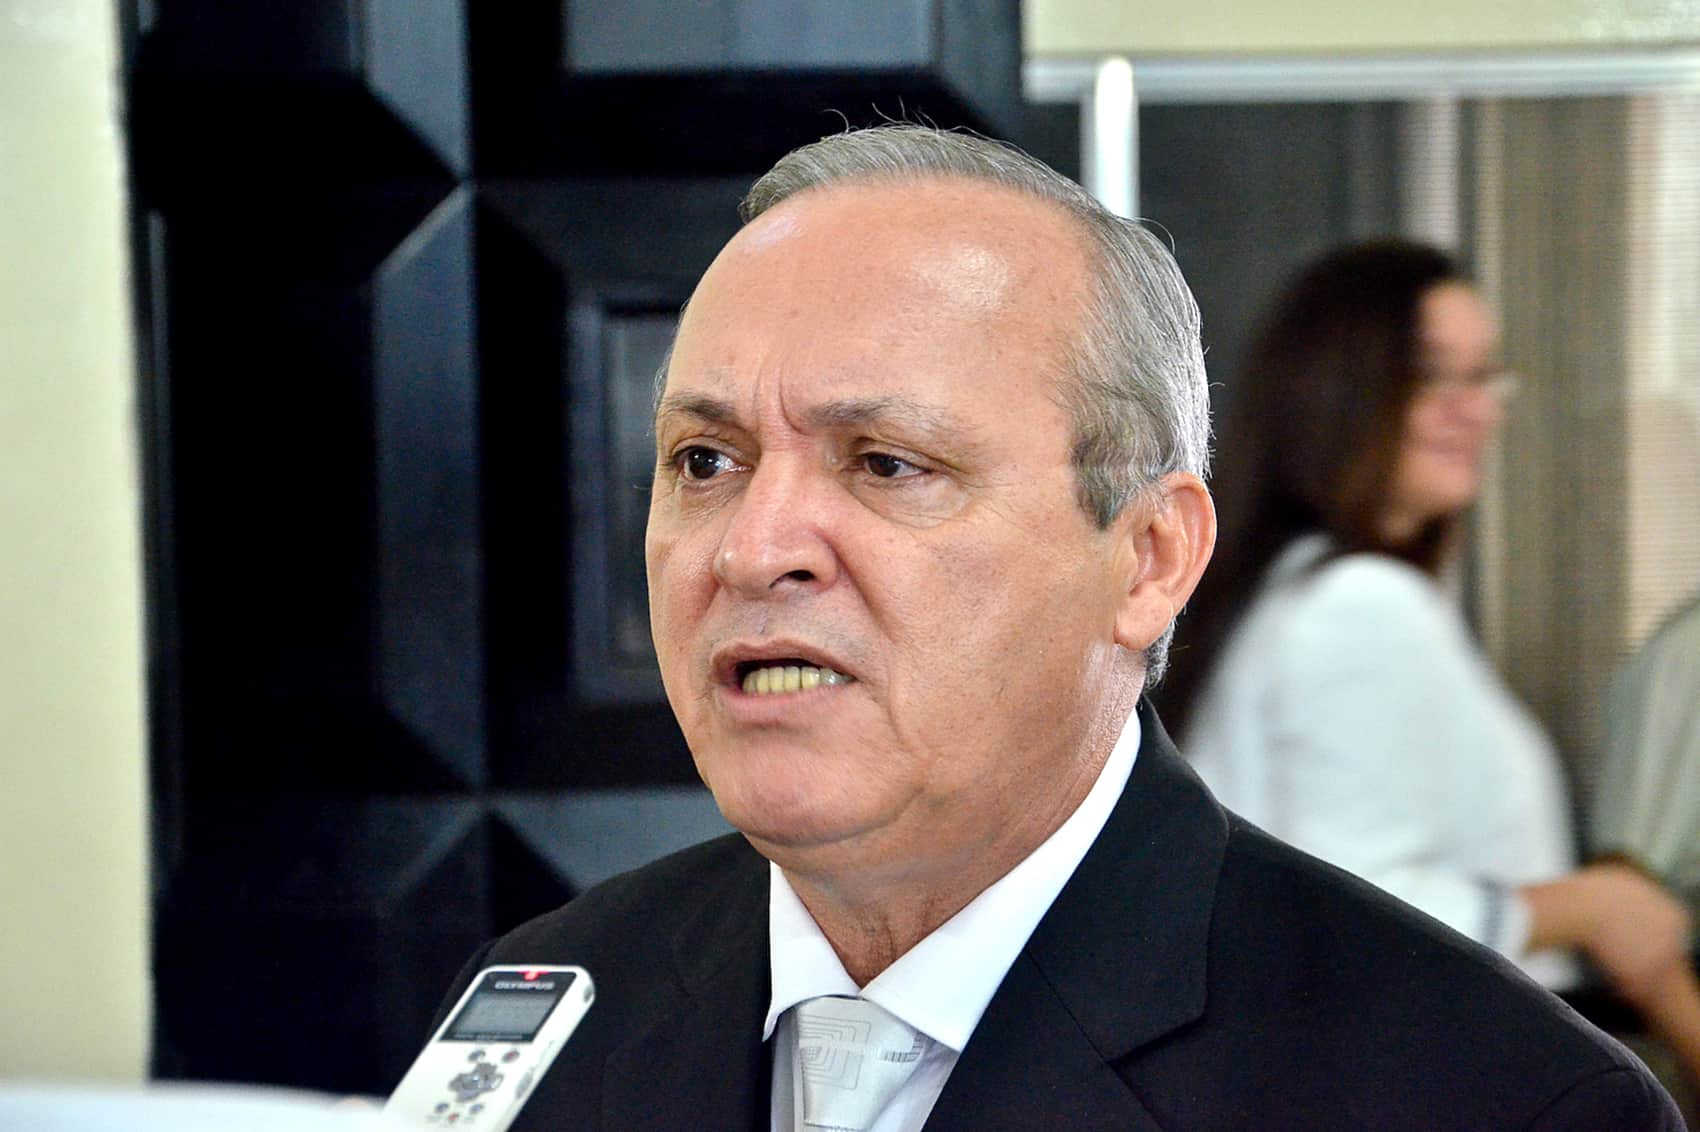 PUSC lawmaker Walter Céspedes